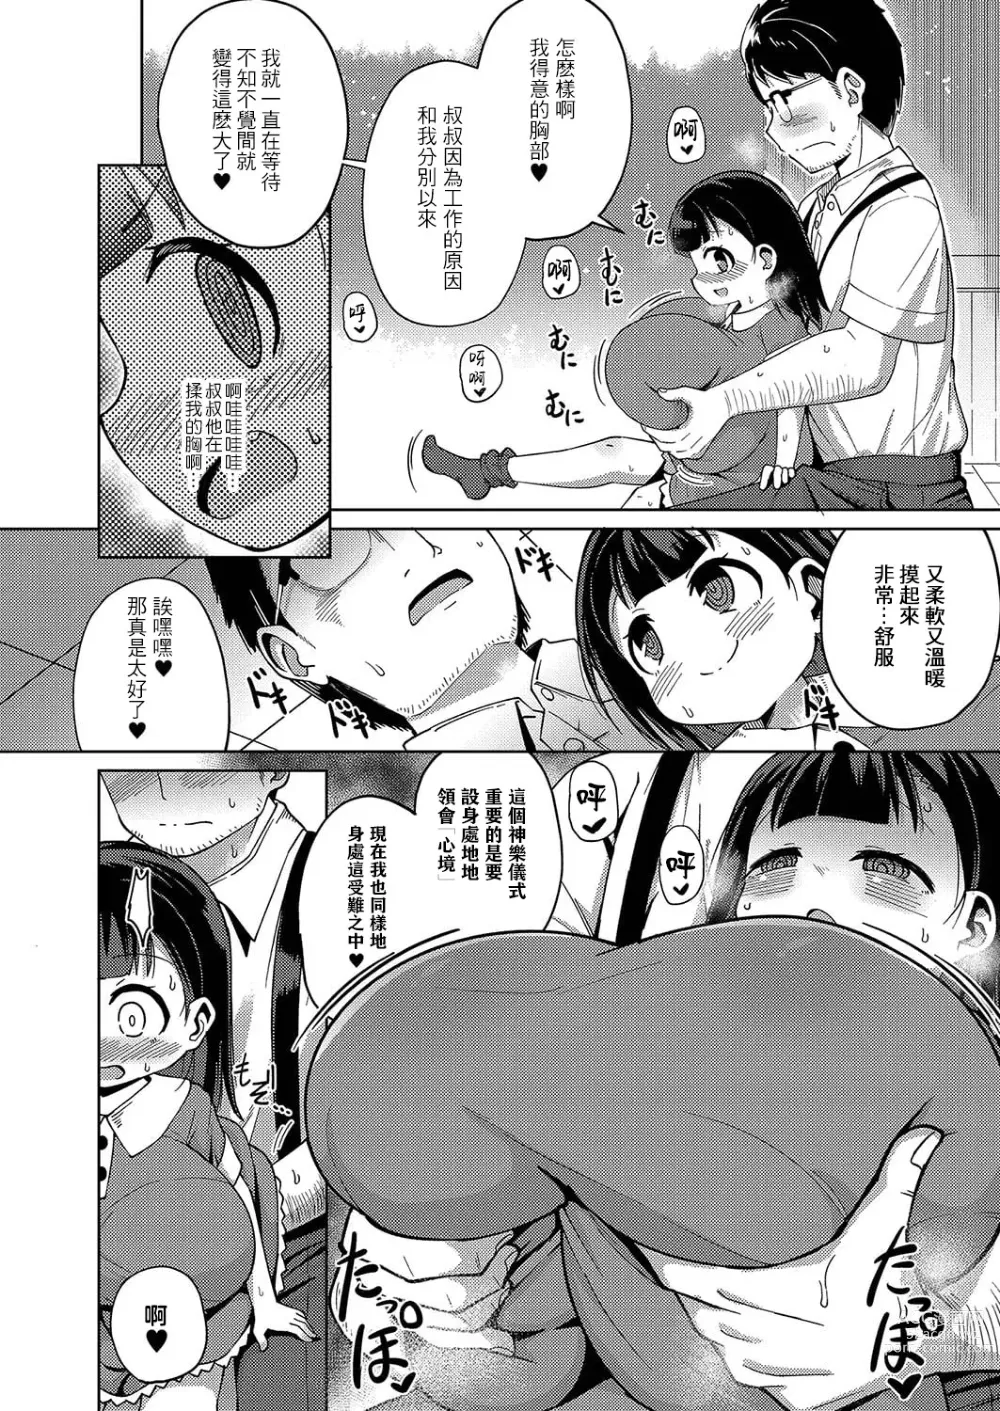 Page 9 of manga Kagura